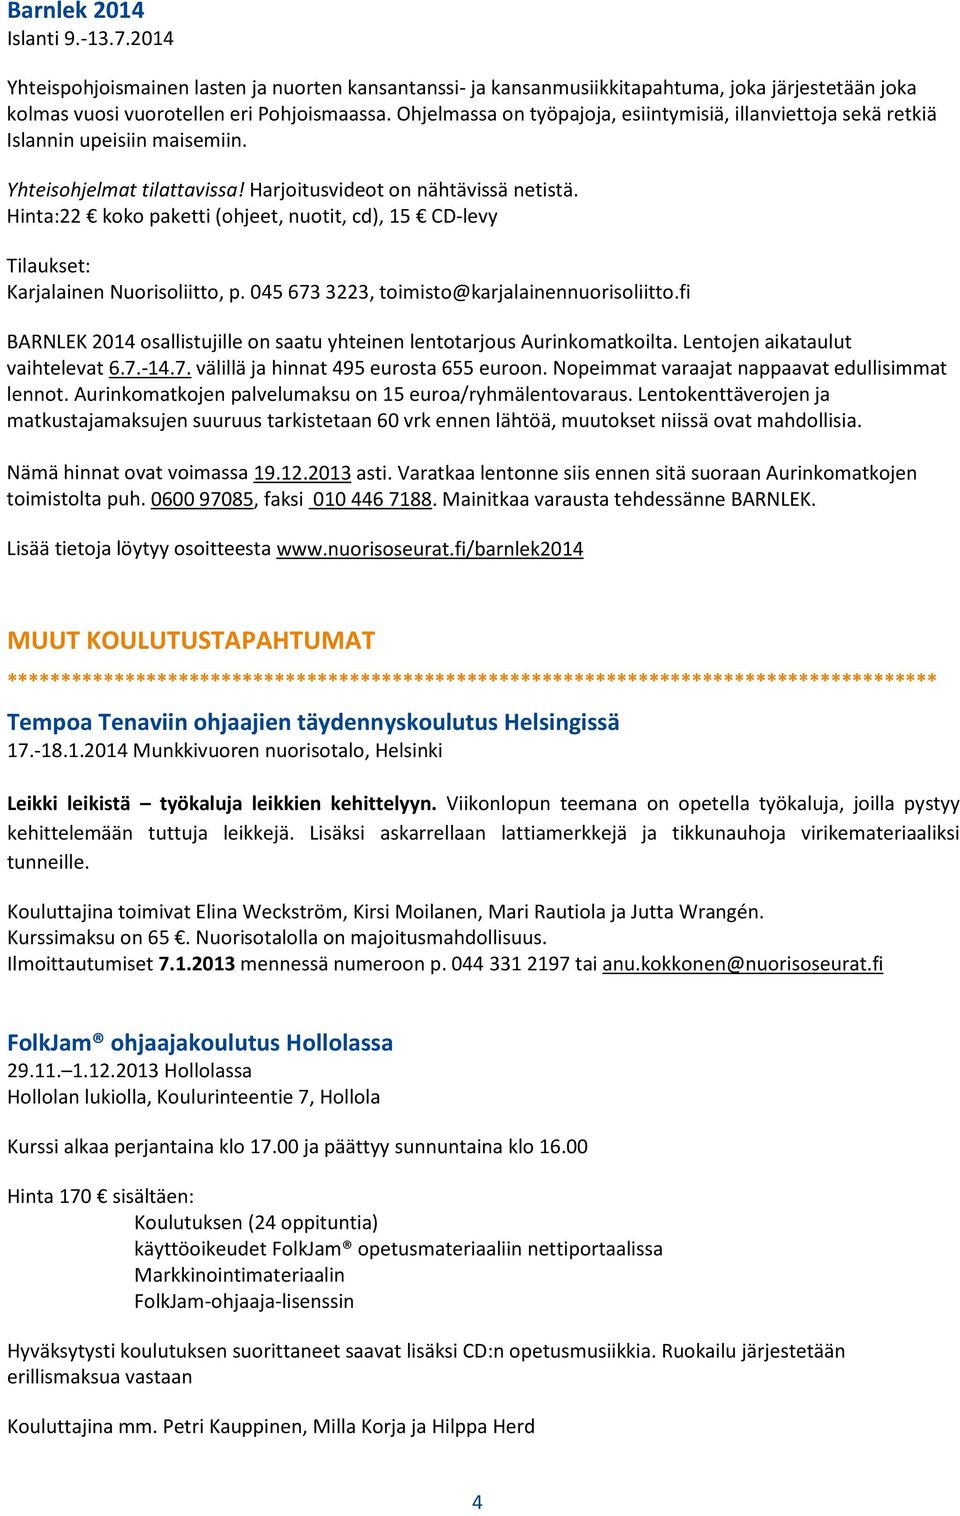 Hinta:22 koko paketti (ohjeet, nuotit, cd), 15 CD-levy Tilaukset: Karjalainen Nuorisoliitto, p. 045 673 3223, toimisto@karjalainennuorisoliitto.